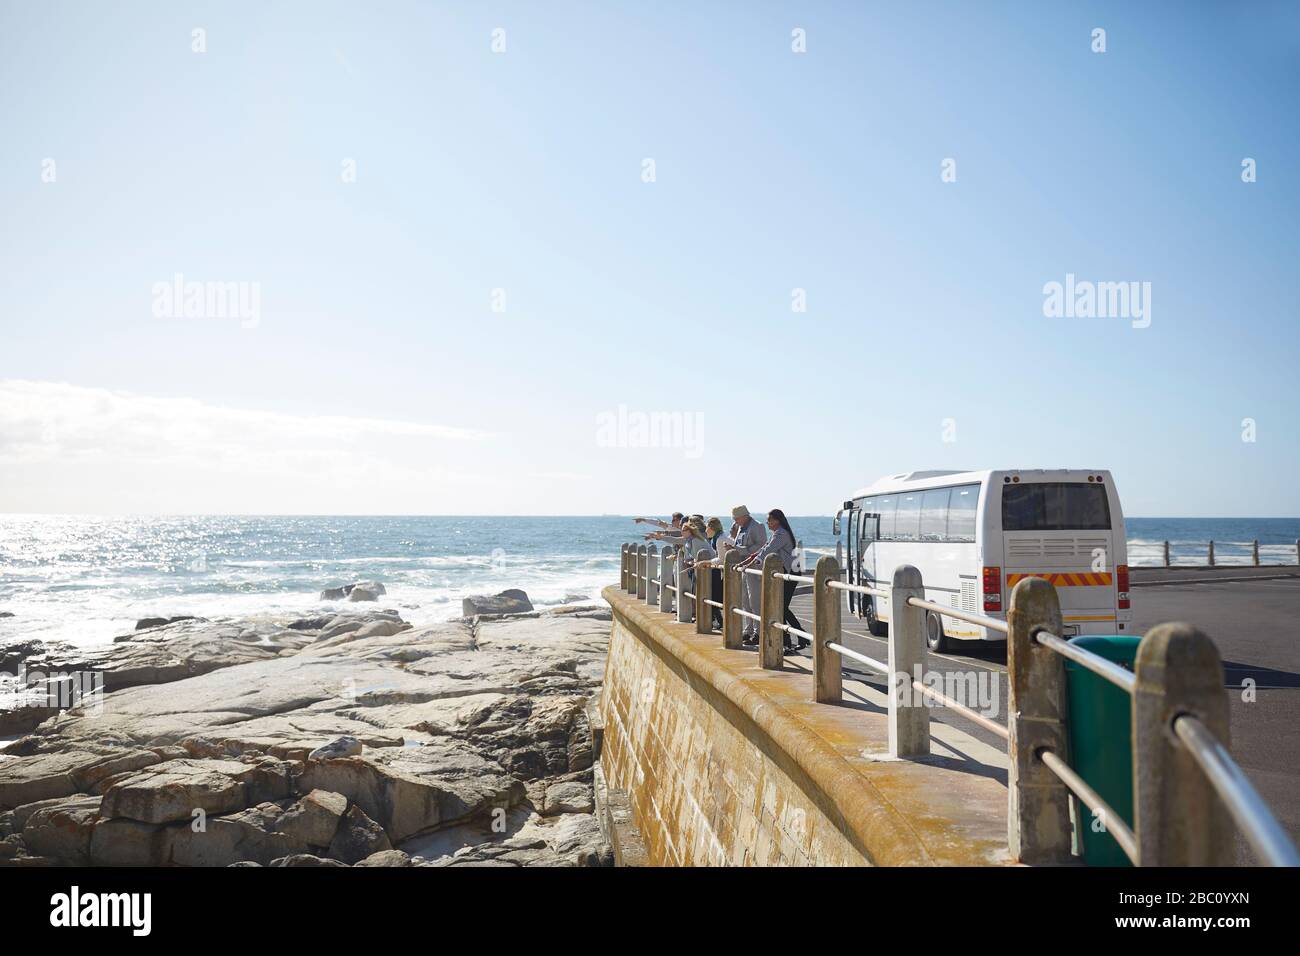 Les touristes regardant la vue ensoleillée sur l'océan à l'extérieur du bus touristique Banque D'Images